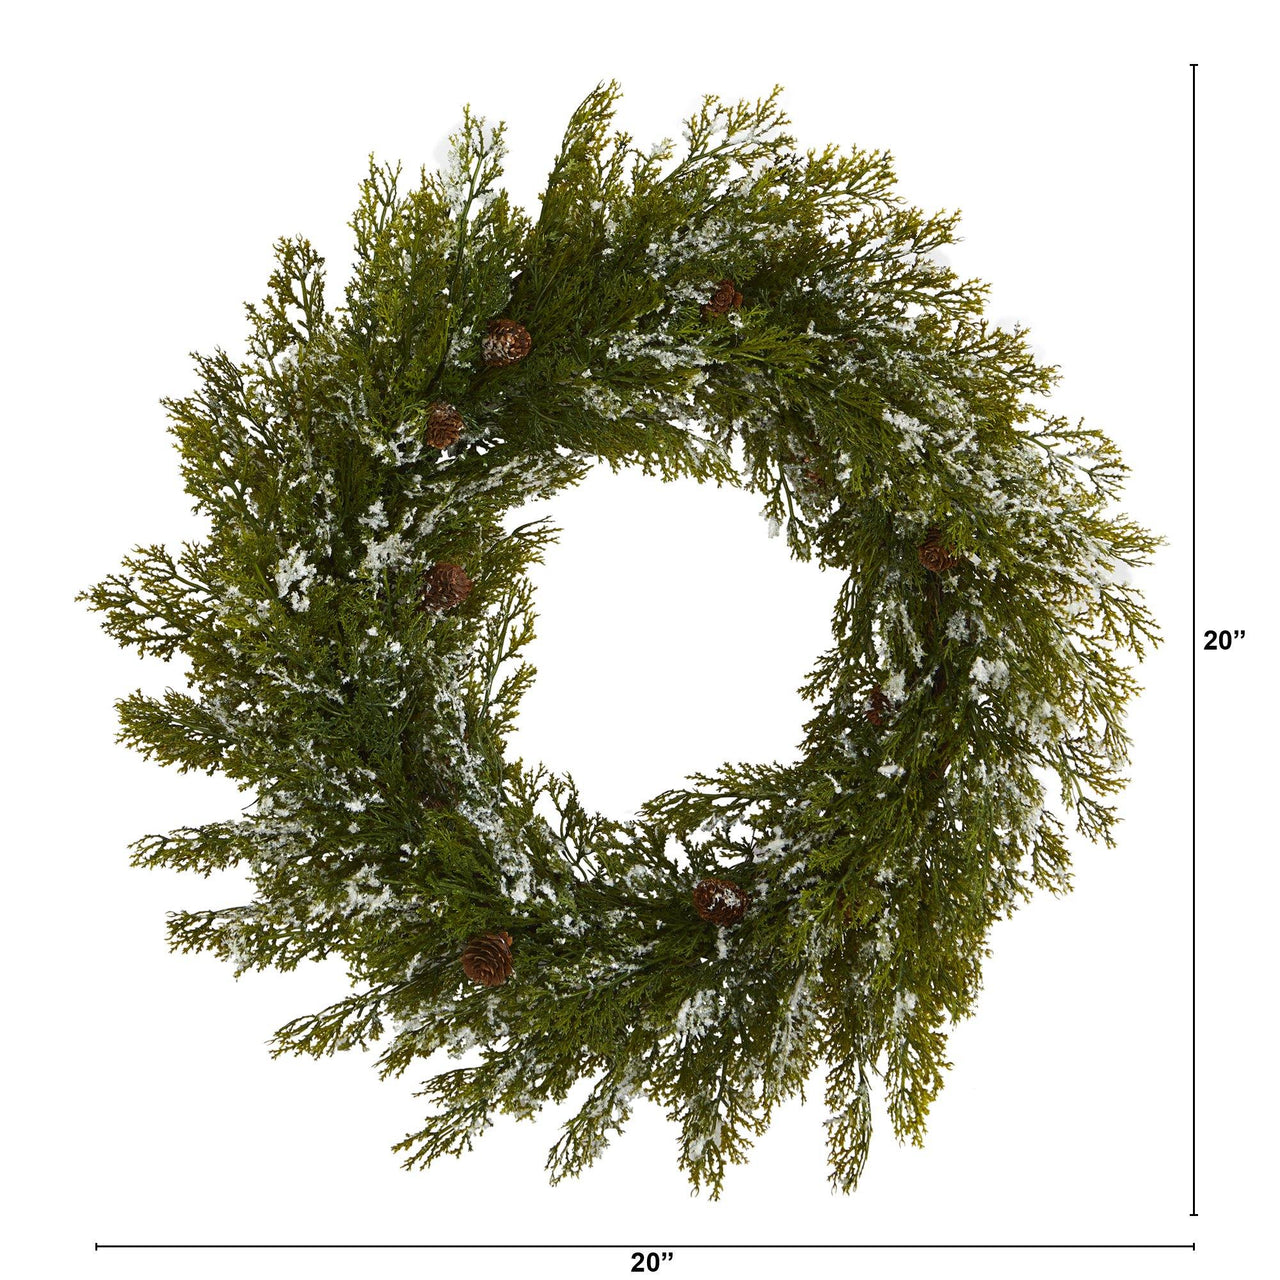 20” Snowed Artificial Cedar Wreath with Pine Cones - The Fox Decor